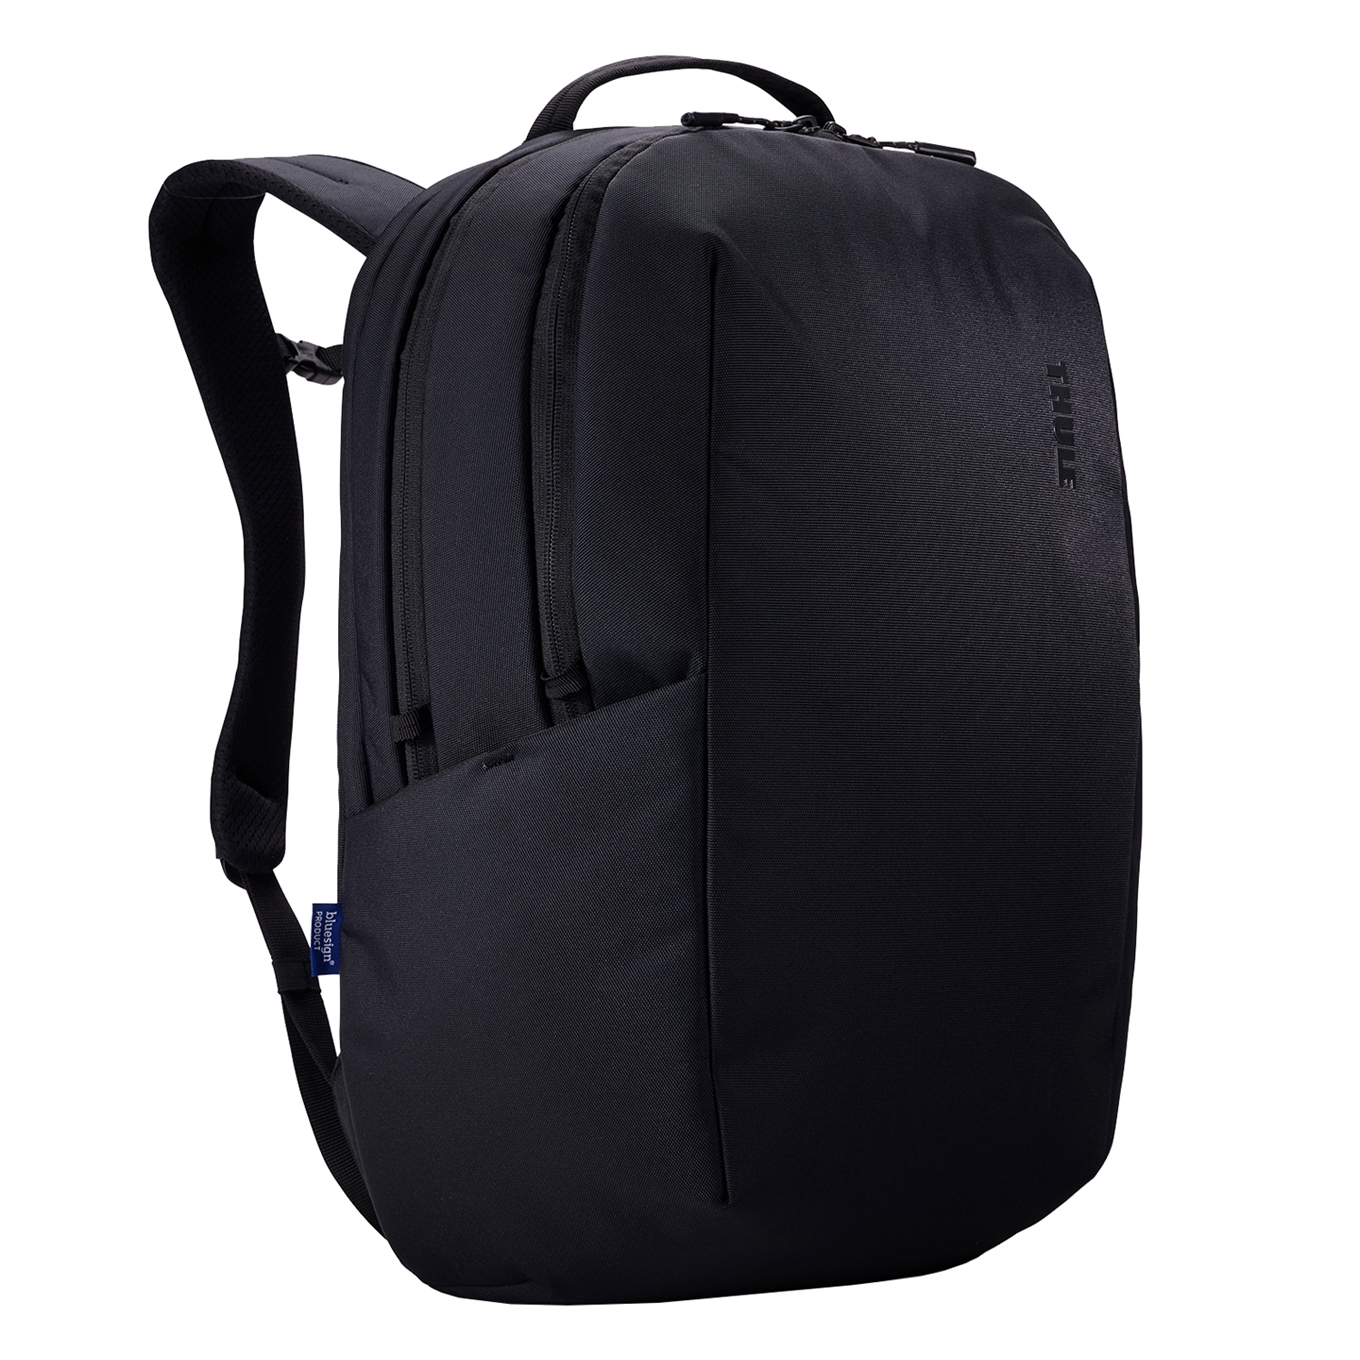 Thule Subterra 2 BP 27L black backpack